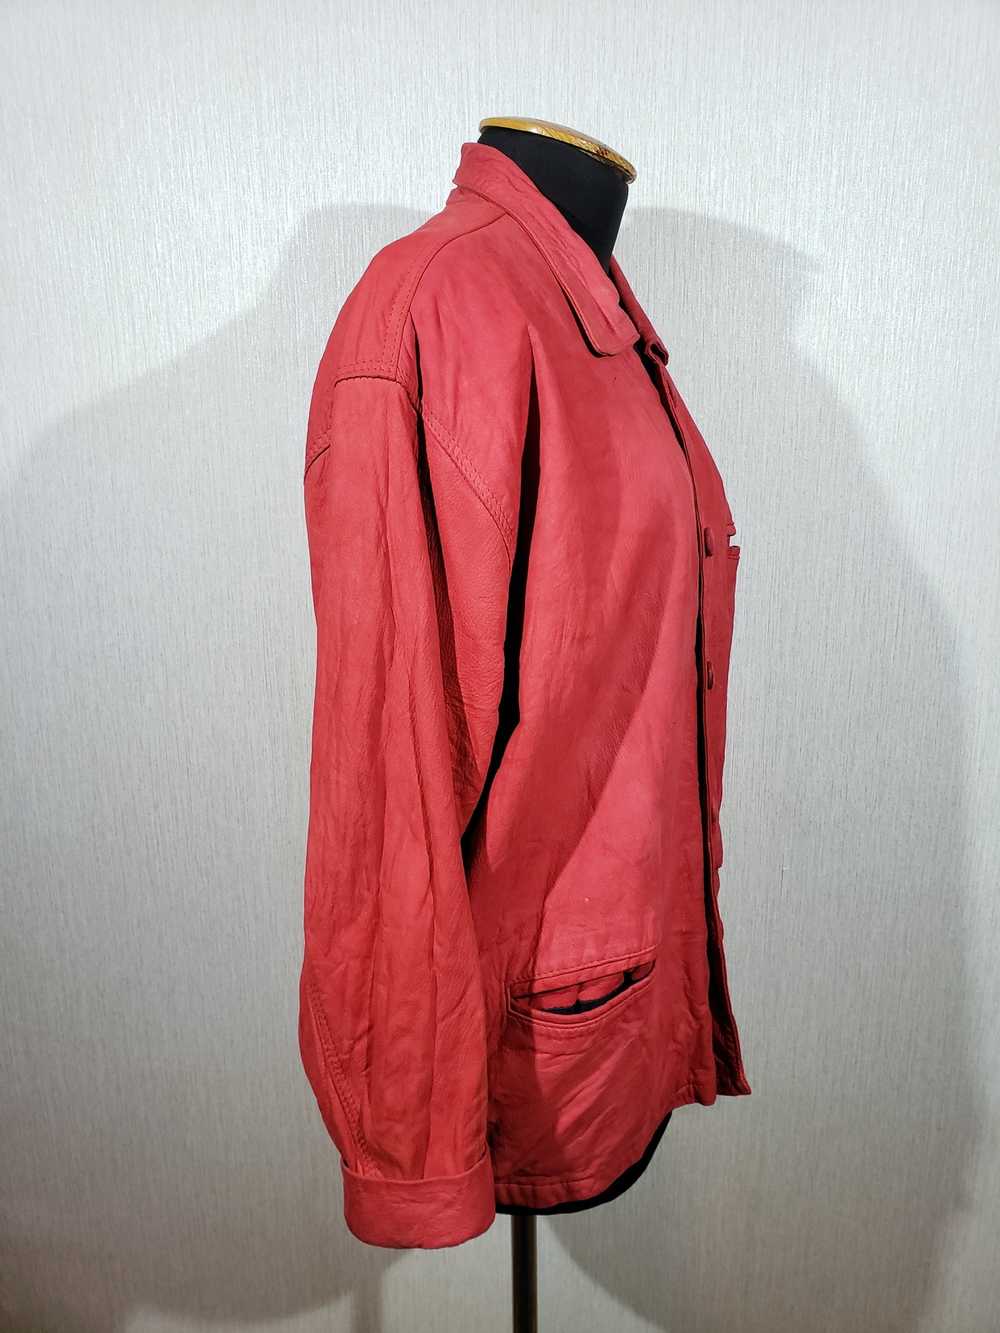 Designer × Reel Legends Stylish red men's leather… - image 3